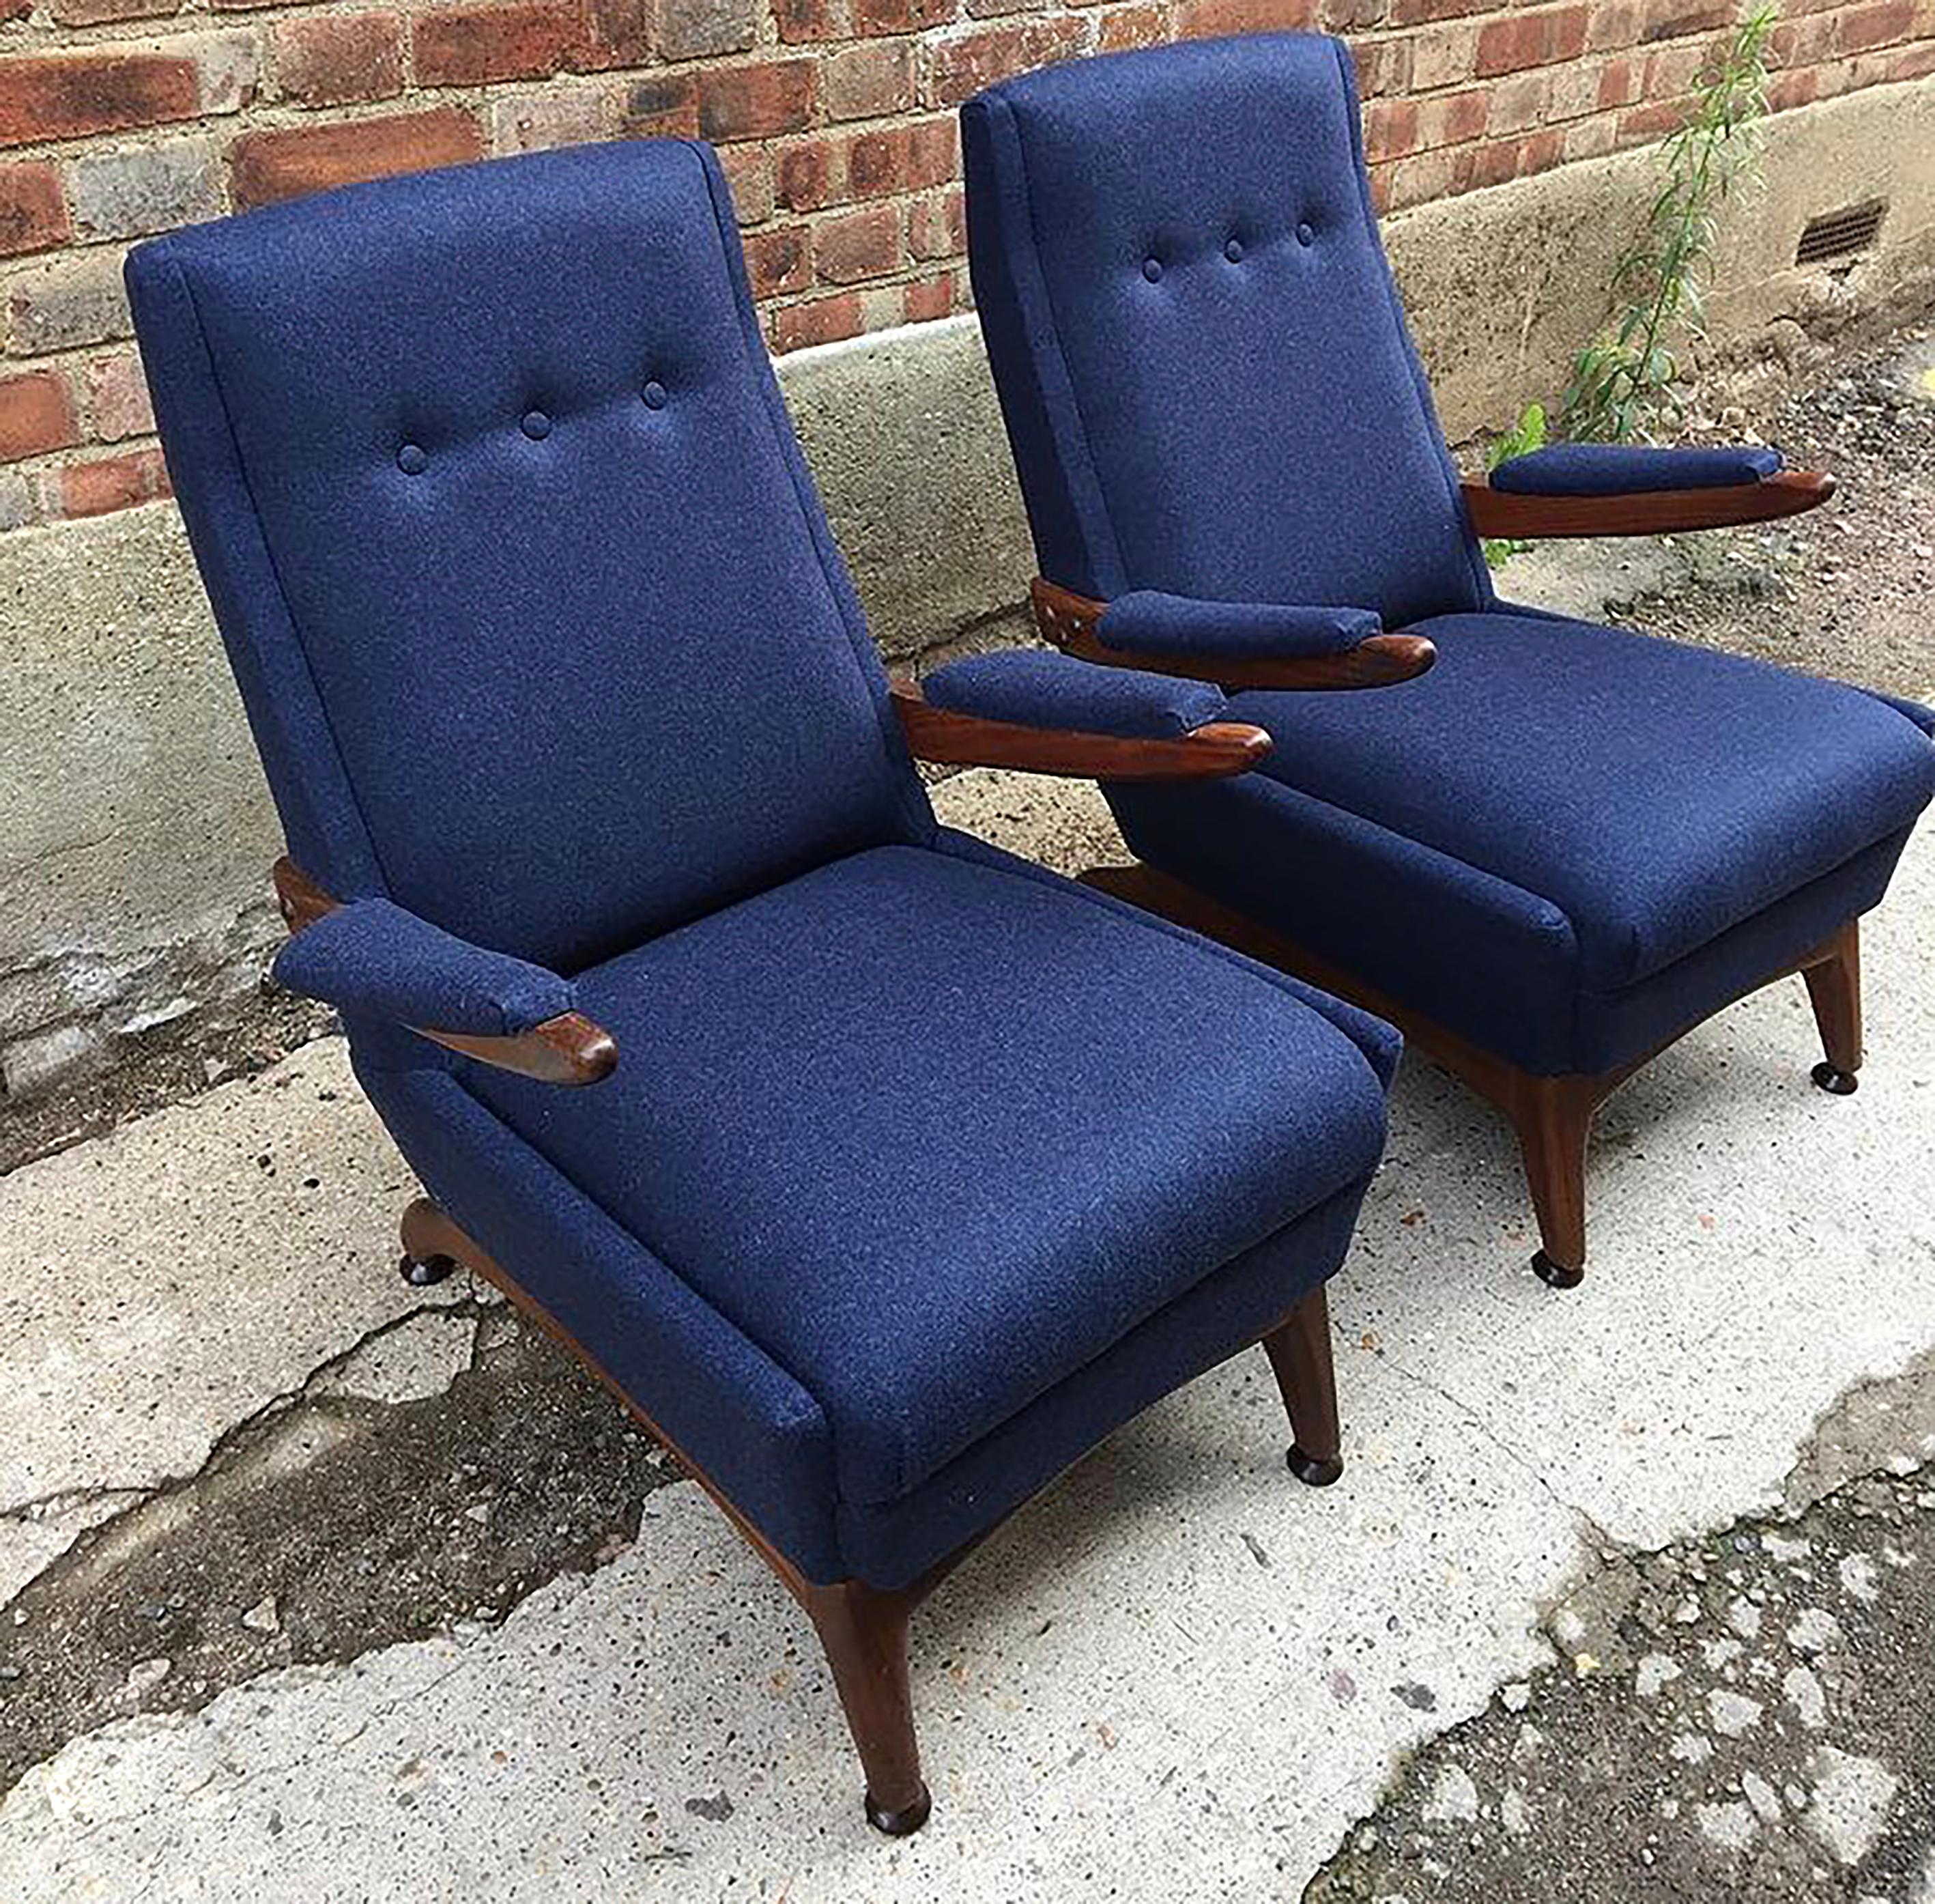 Paire de jolis fauteuils en bois fabriqués dans les années 1960. Le cadre en teck, poli à l'huile danoise, est magnifiquement sculpté à la main avec de merveilleuses courbes élégantes. Incroyablement confortables, ces chaises sont idéales pour se